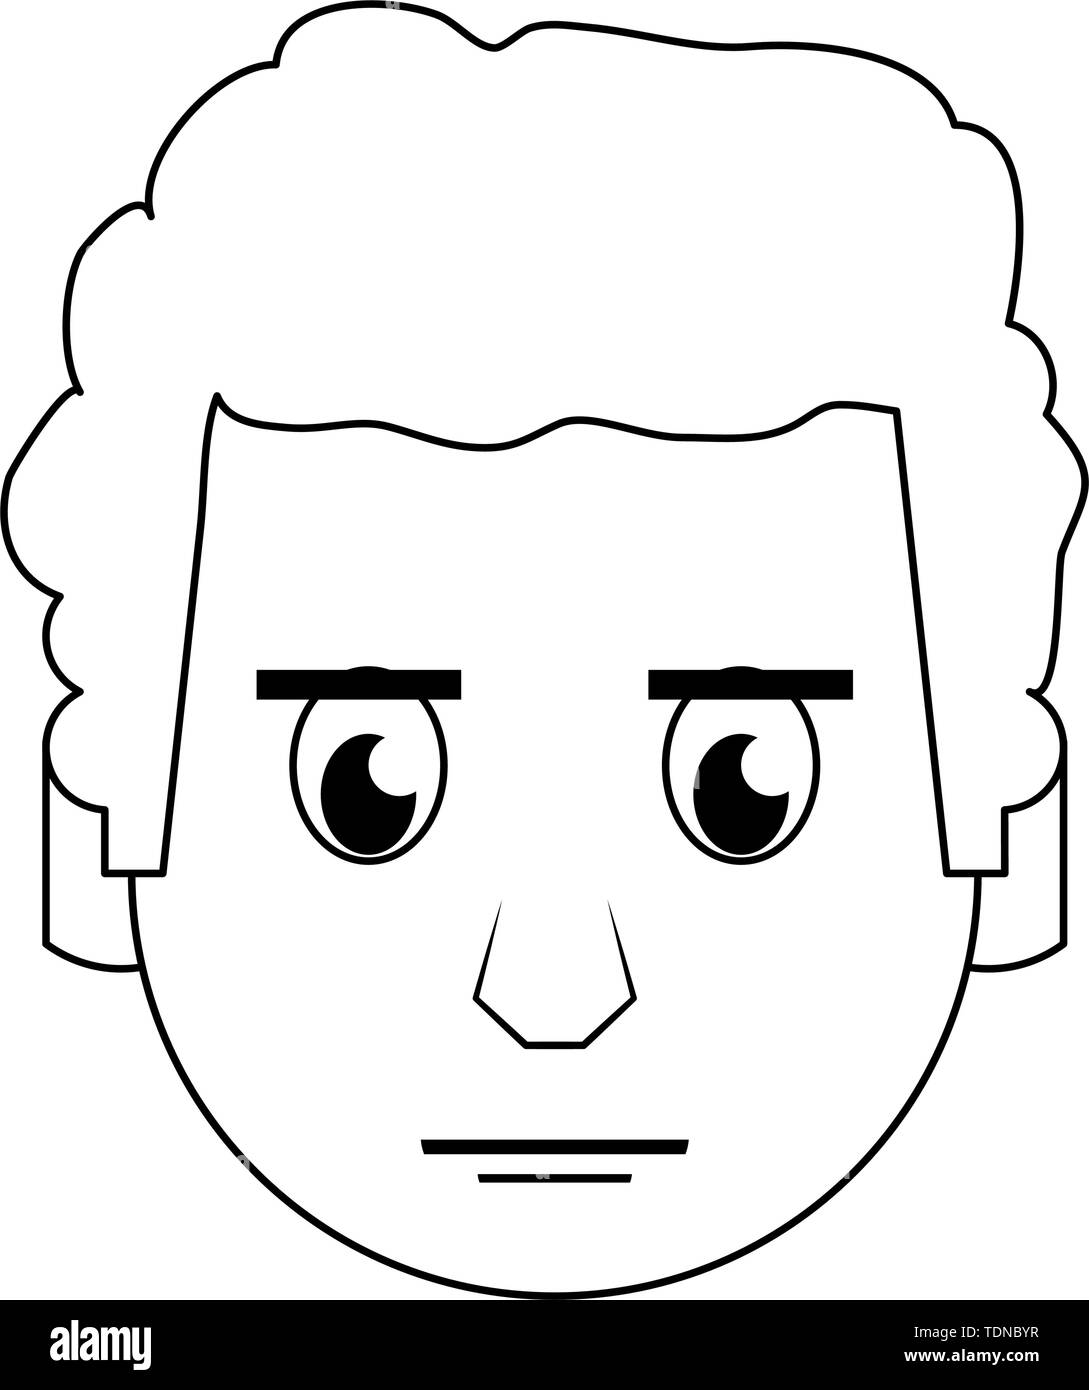 Mann Gesicht Kopf Charakter Karikatur in Schwarz und Weiß Stock Vektor